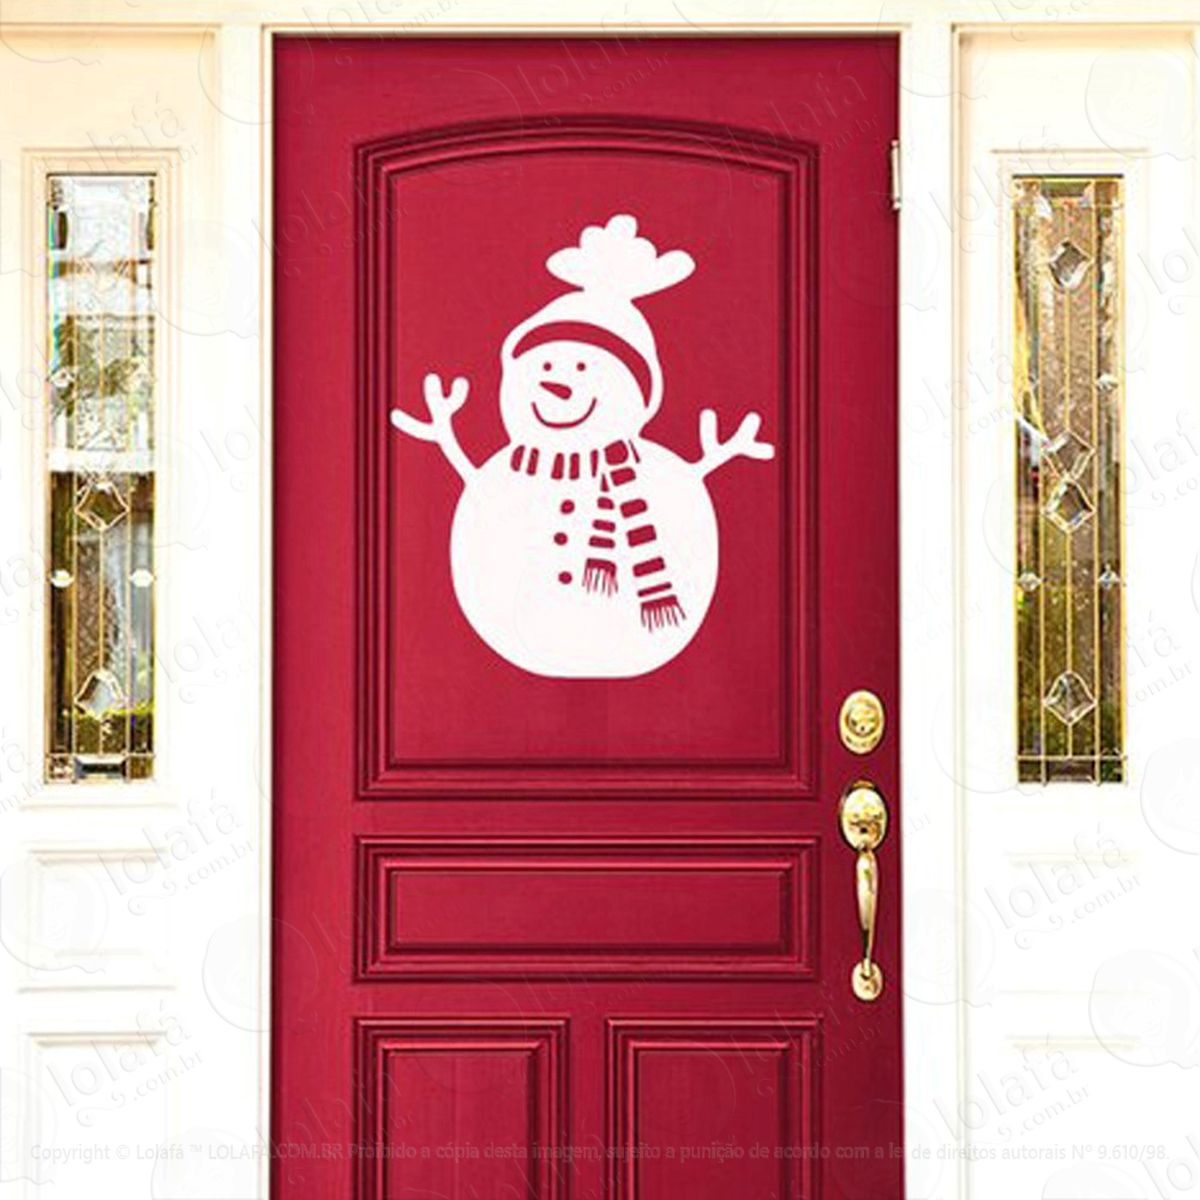 boneco de neve adesivo de natal para vitrine, parede, porta de vidro - decoração natalina mod:58